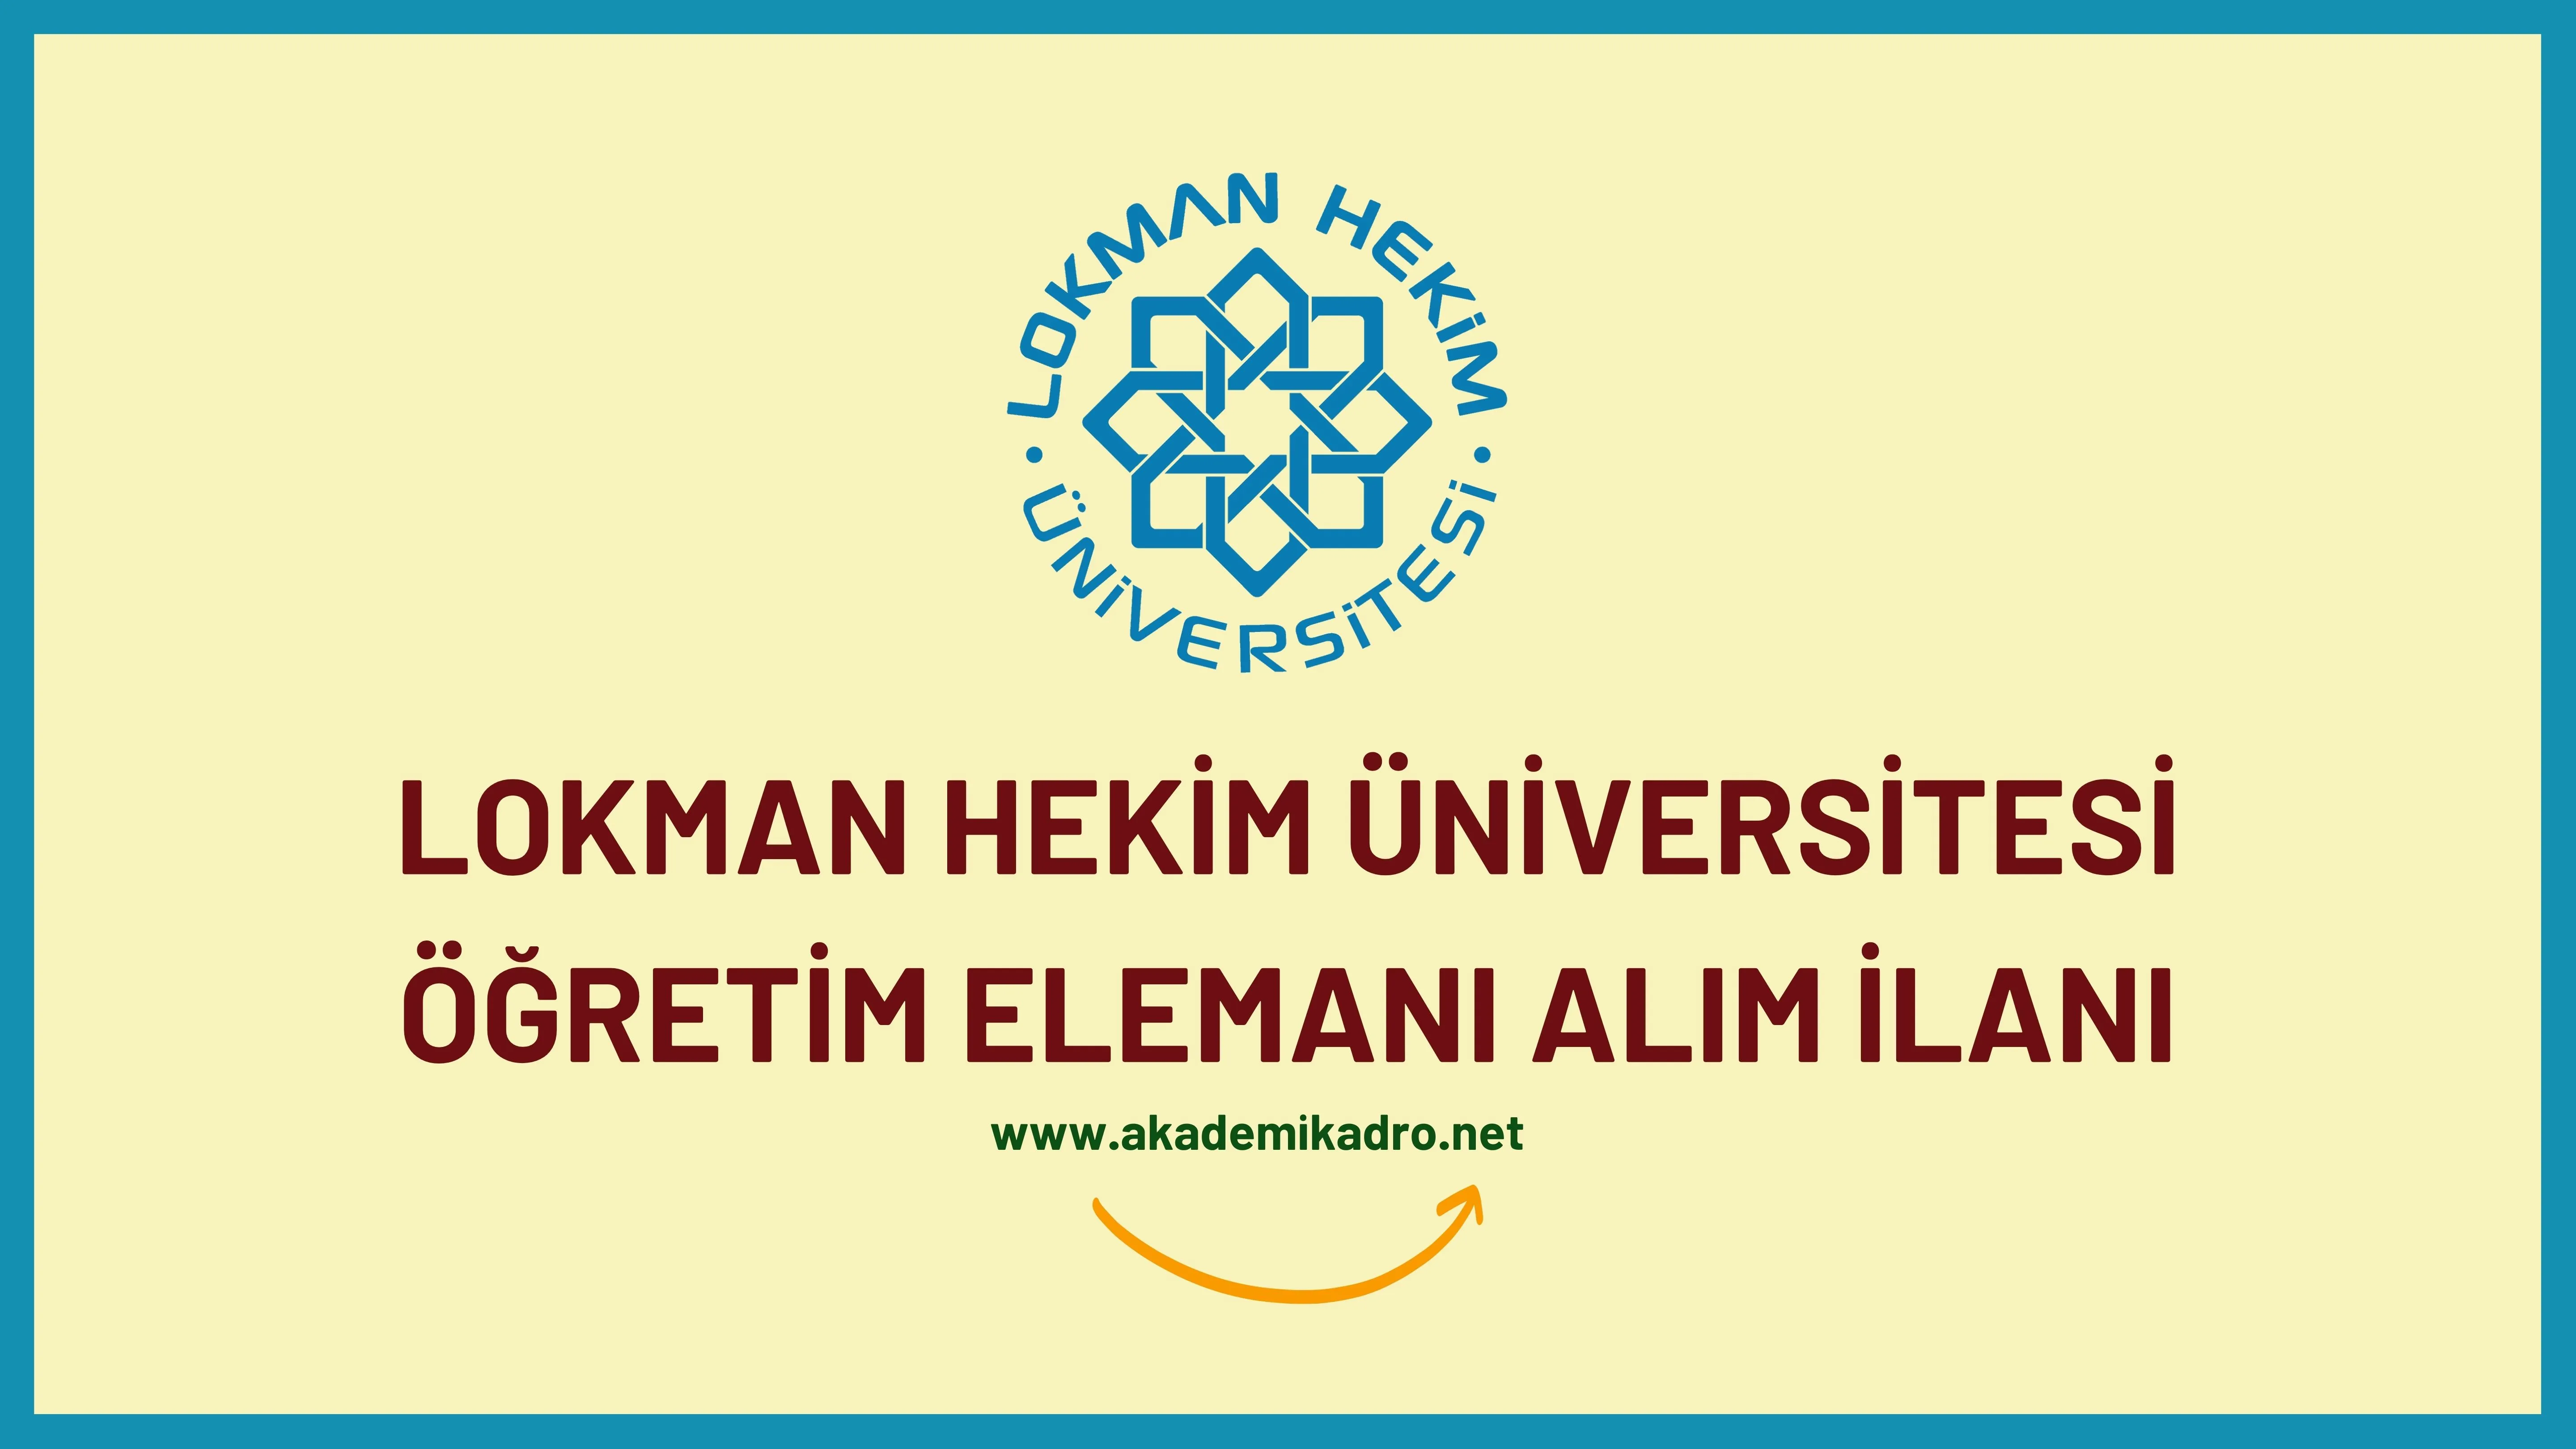 Lokman Hekim Üniversitesi Araştırma görevlisi, öğretim görevlisi ve öğretim üyesi olmak üzere 28 öğretim elemanı alacak.